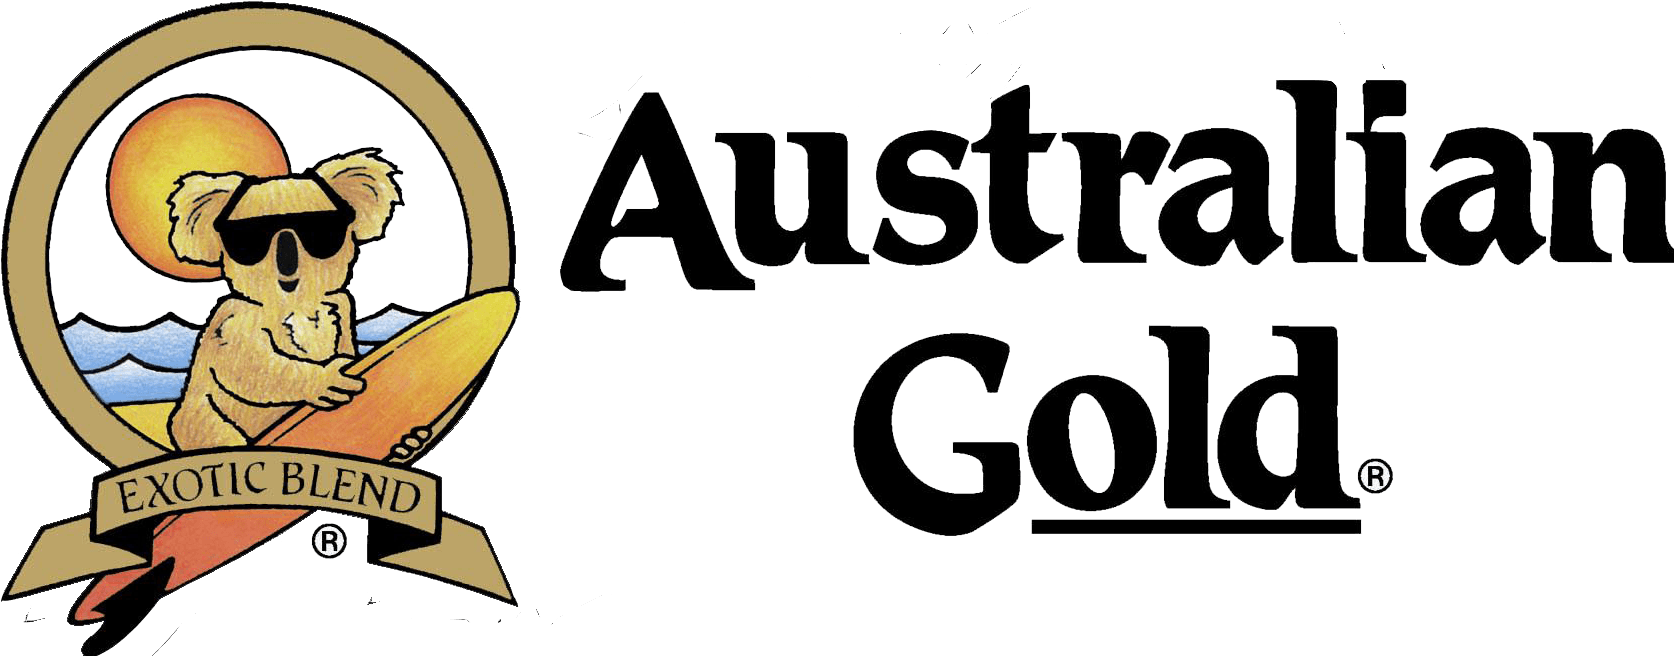 Australian Gold Logo - Australian Gold Logo Sun Factory